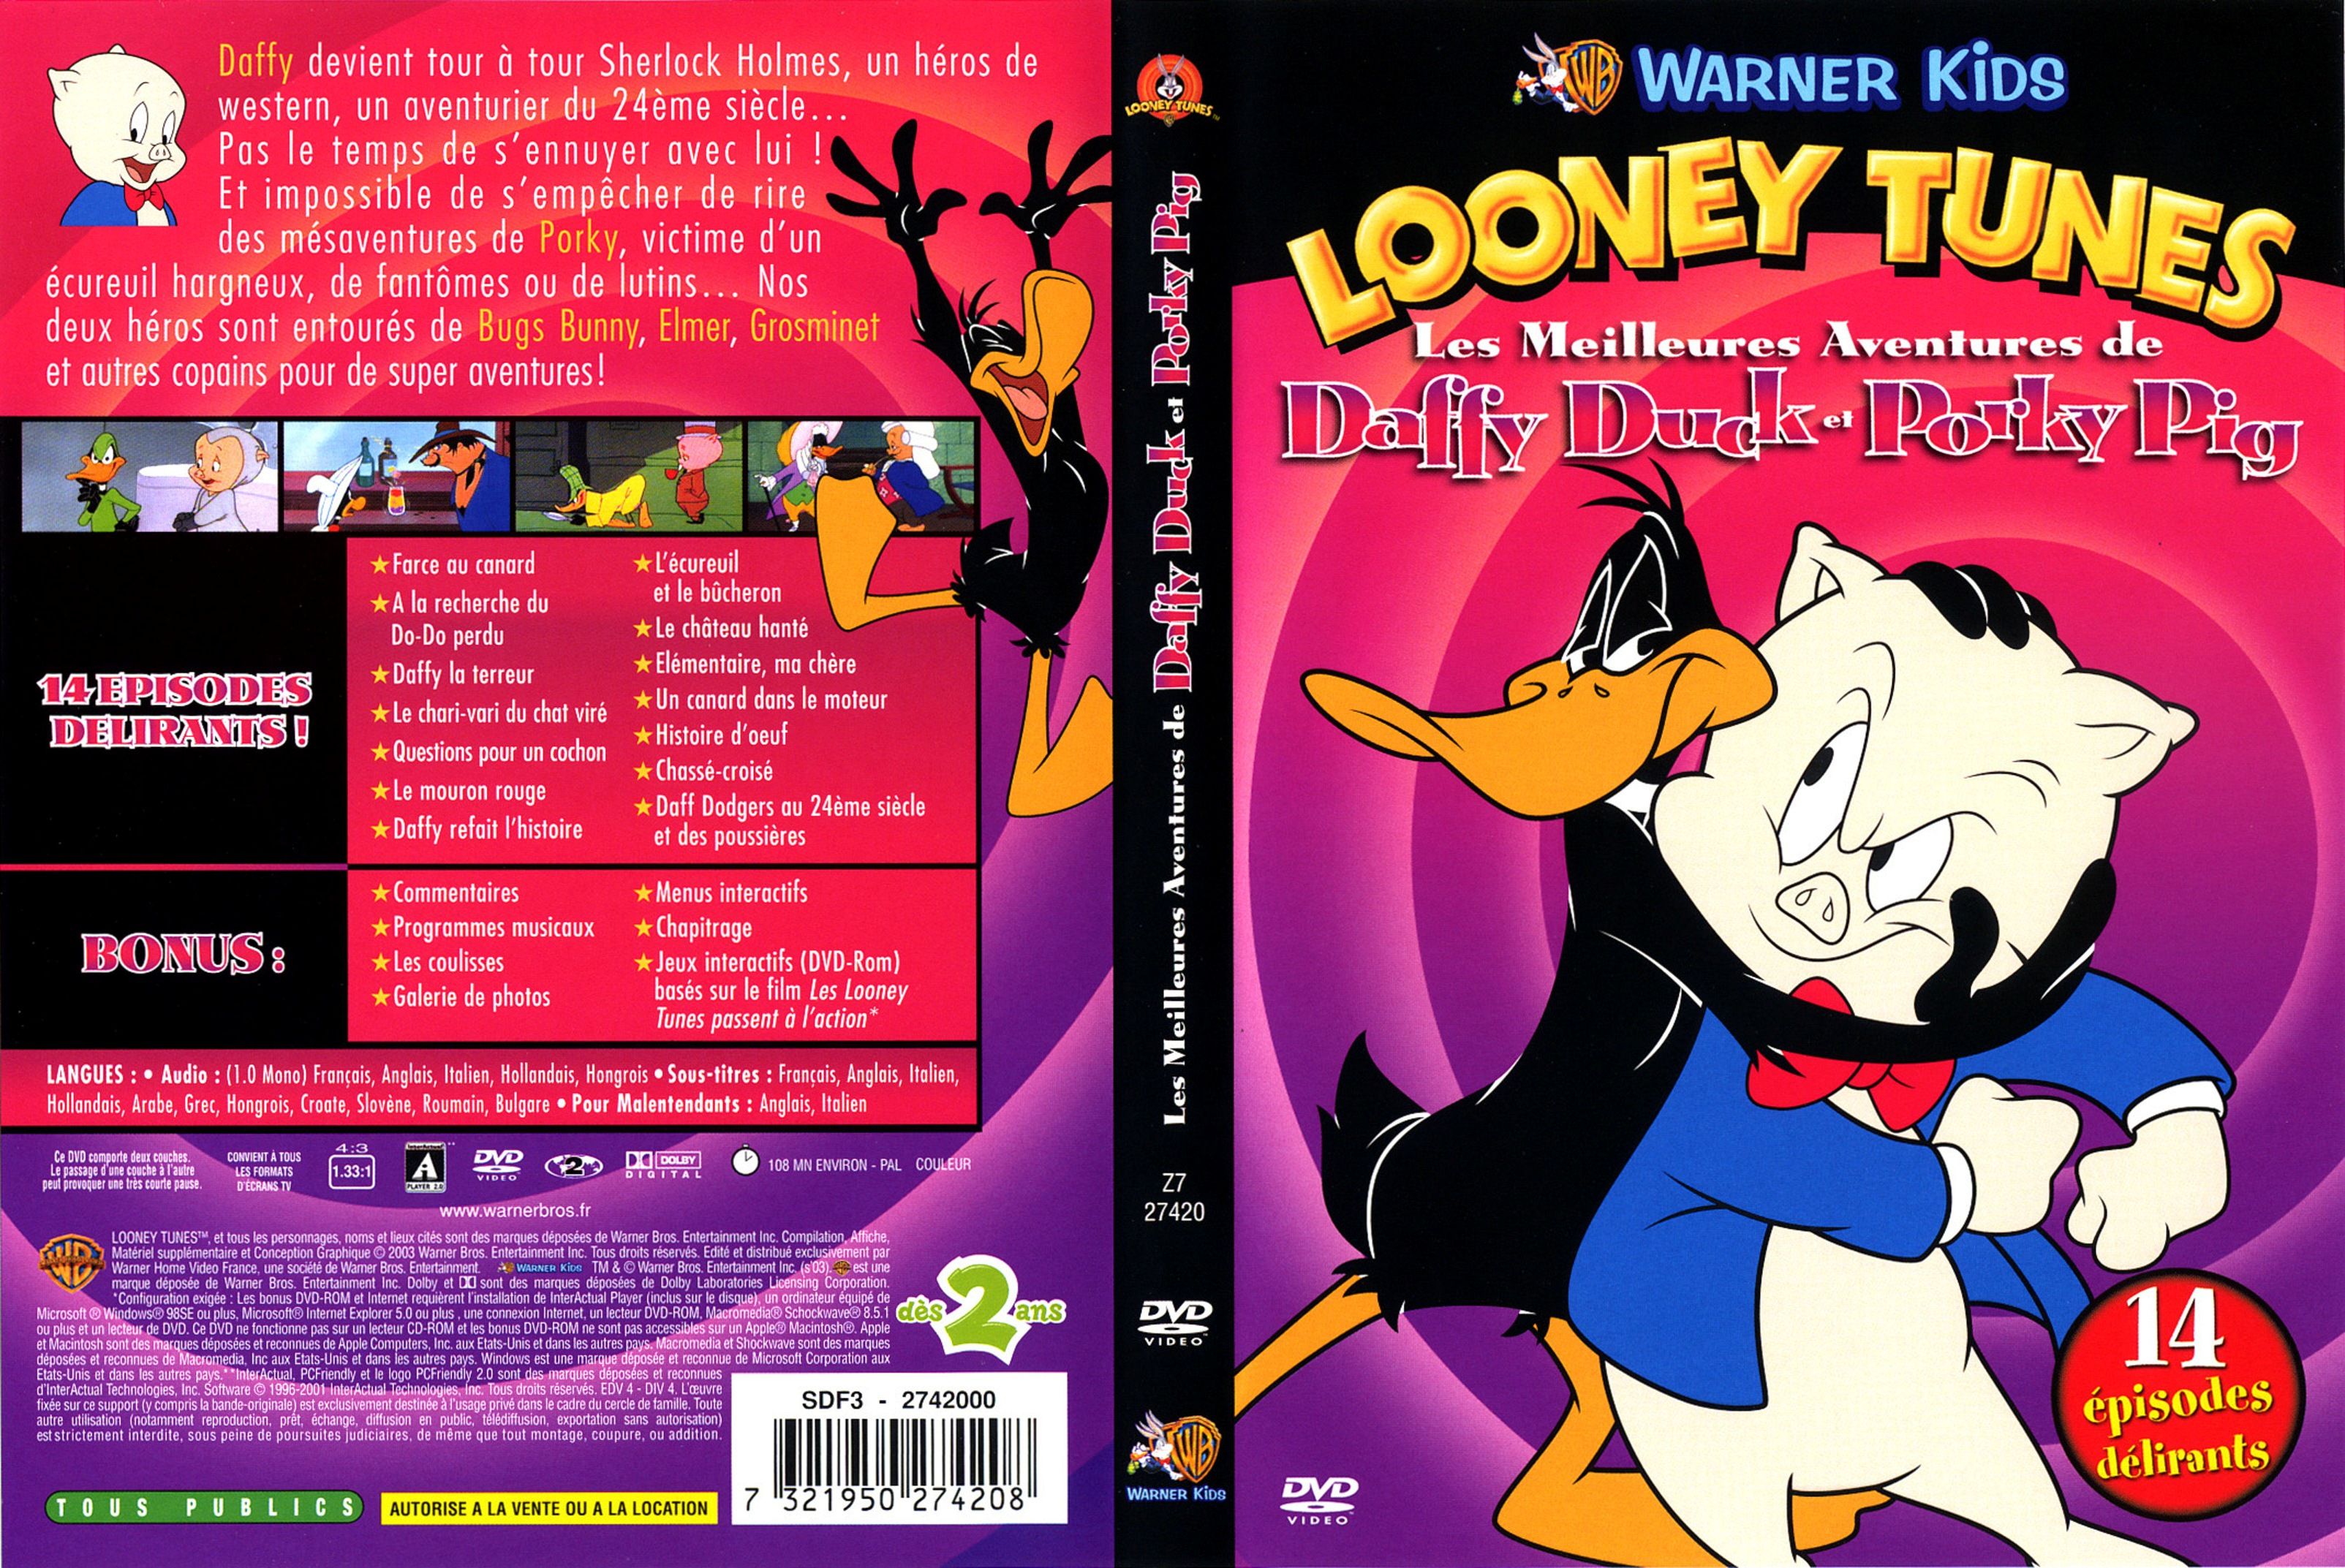 Jaquette DVD Lonney tunes les meilleures aventures de Daffy Duck et Porky